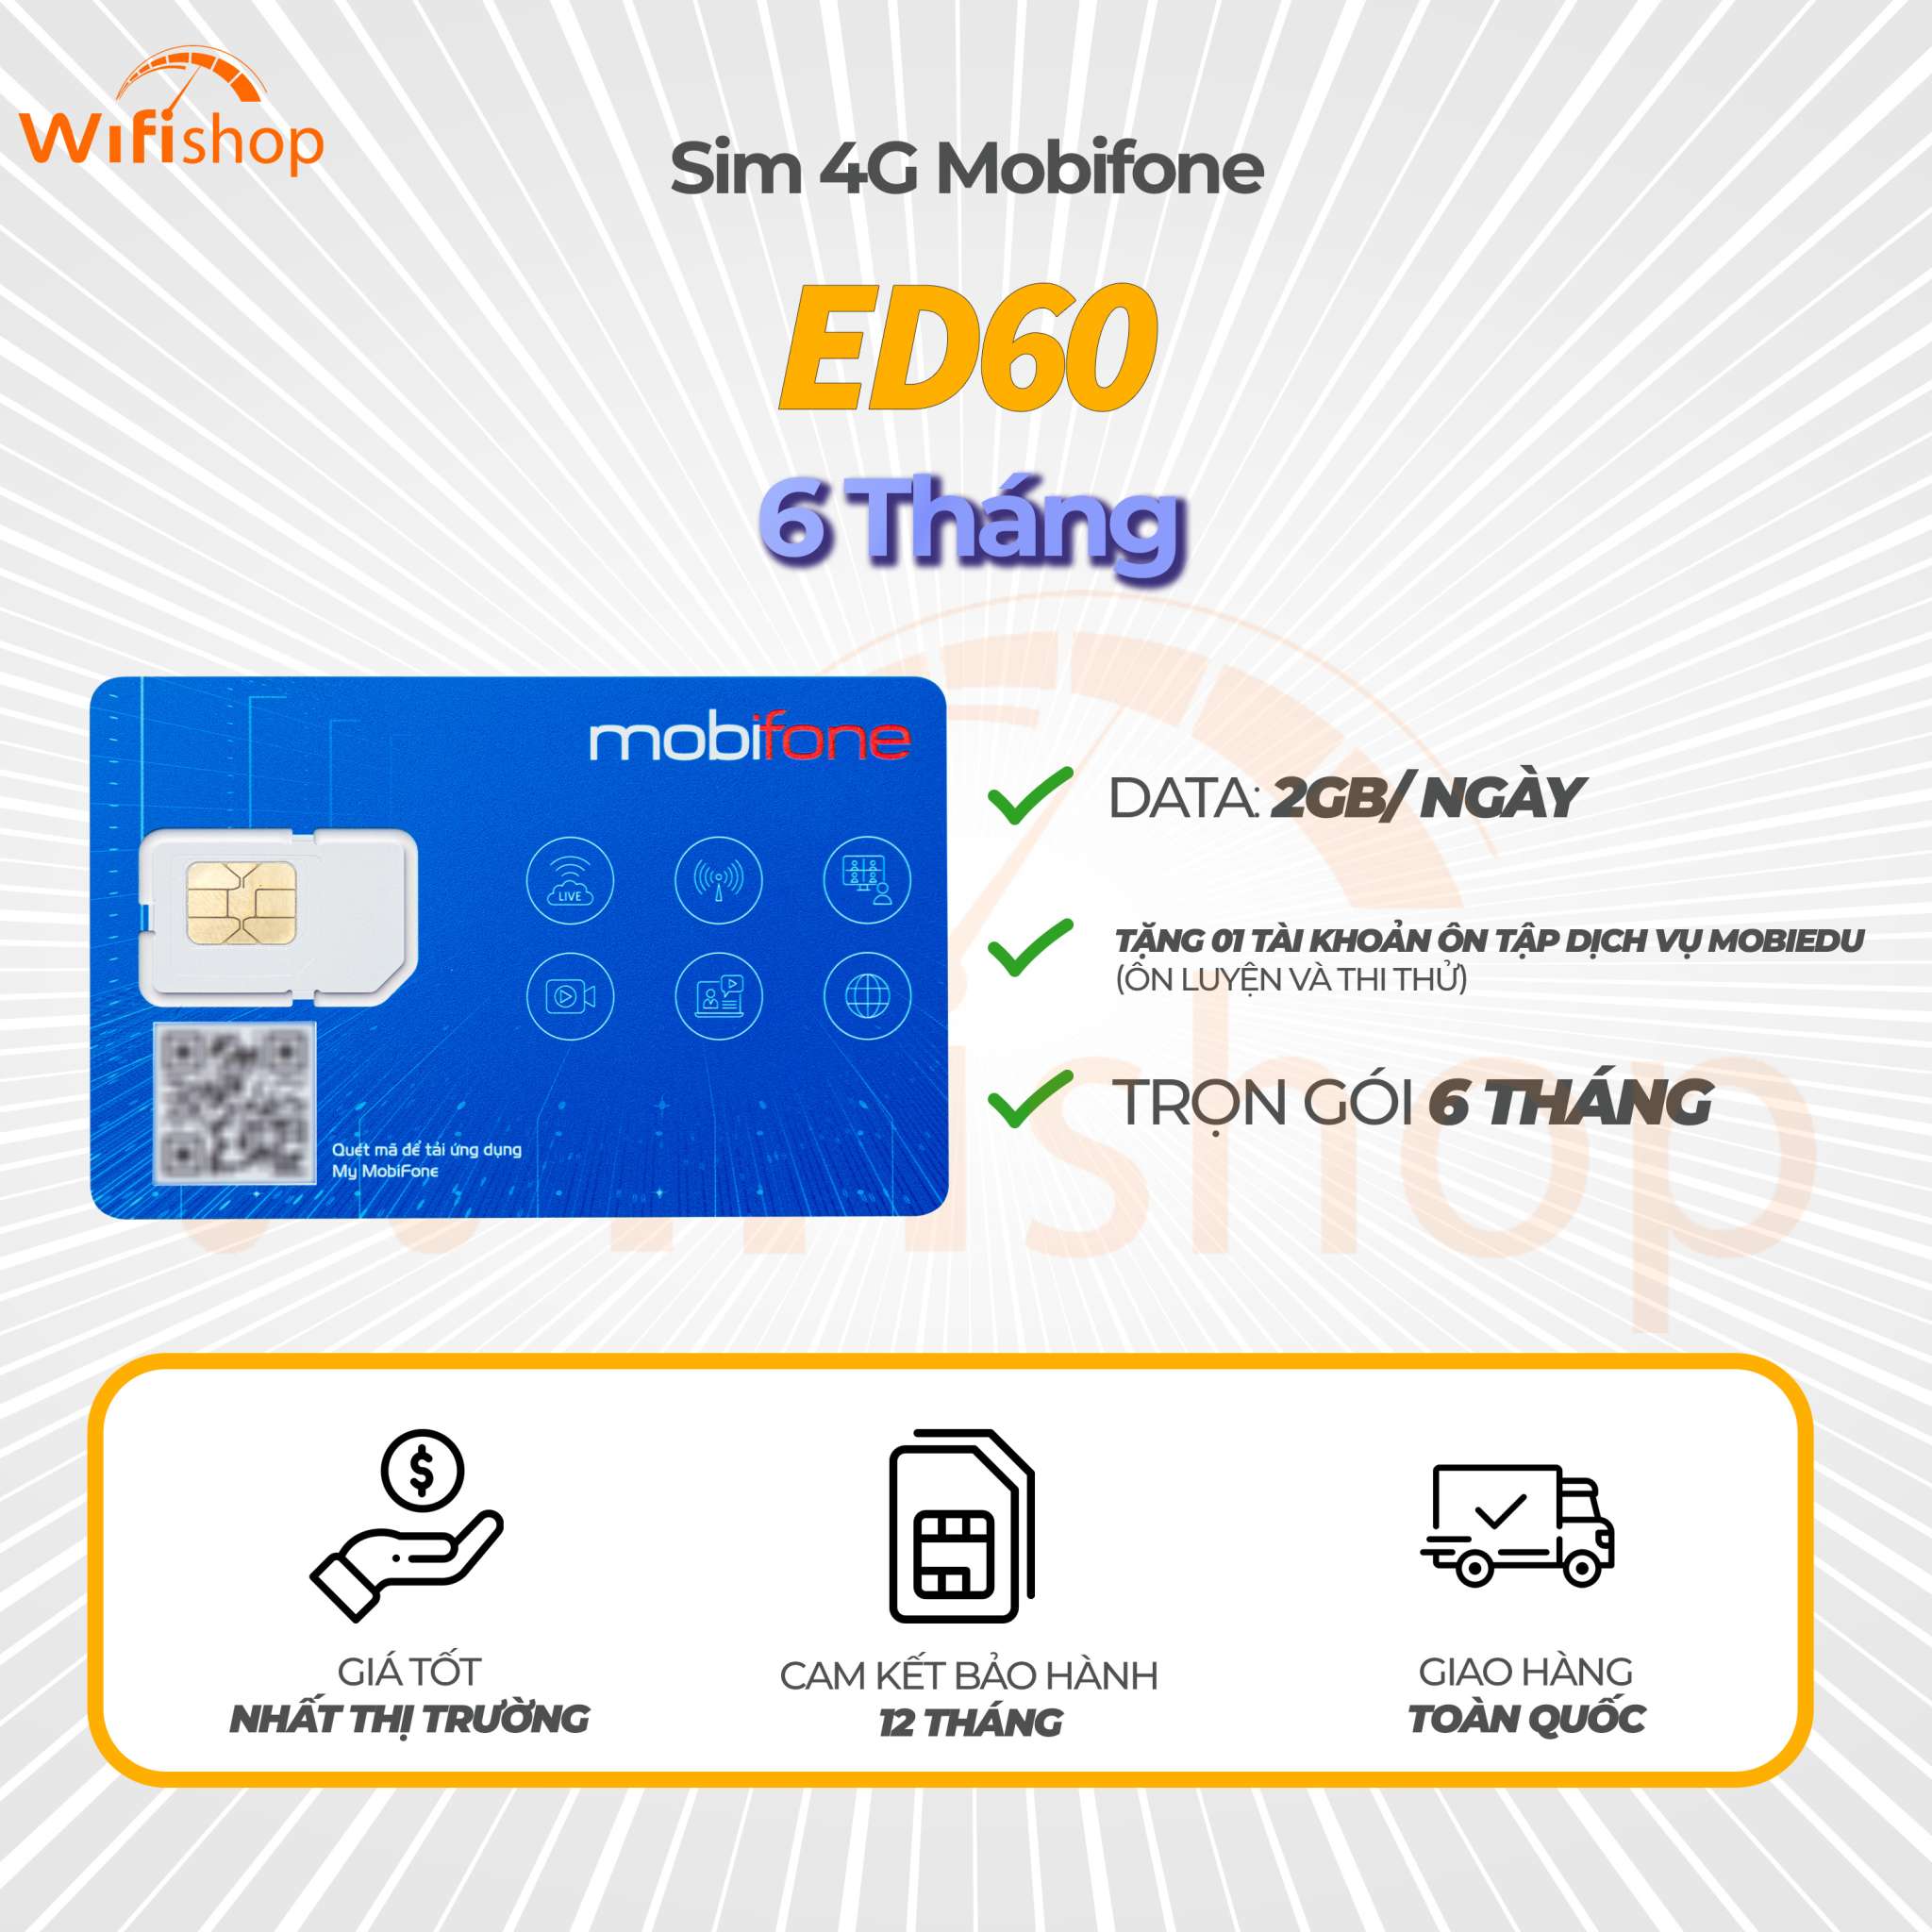 Sim Mobifone 4G ED60 ưu đãi 2GB/ ngày, hạ băng thông 5Mbps, 6 tháng không nạp tiền